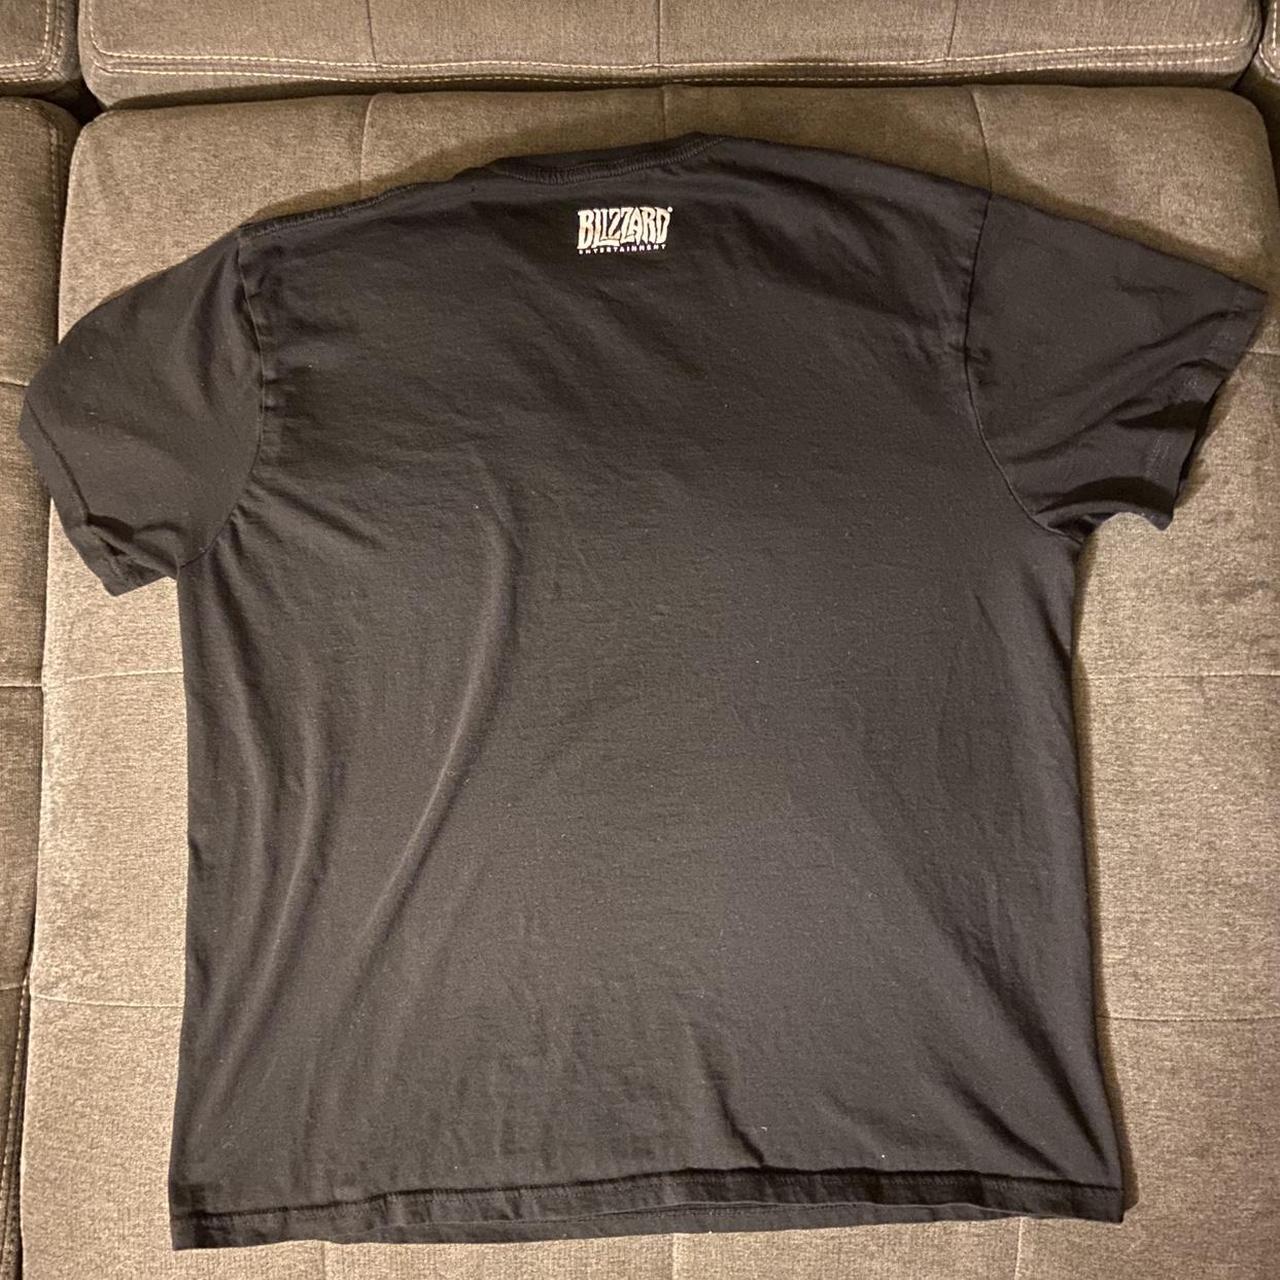 Overwatch Men's Black T-shirt (2)